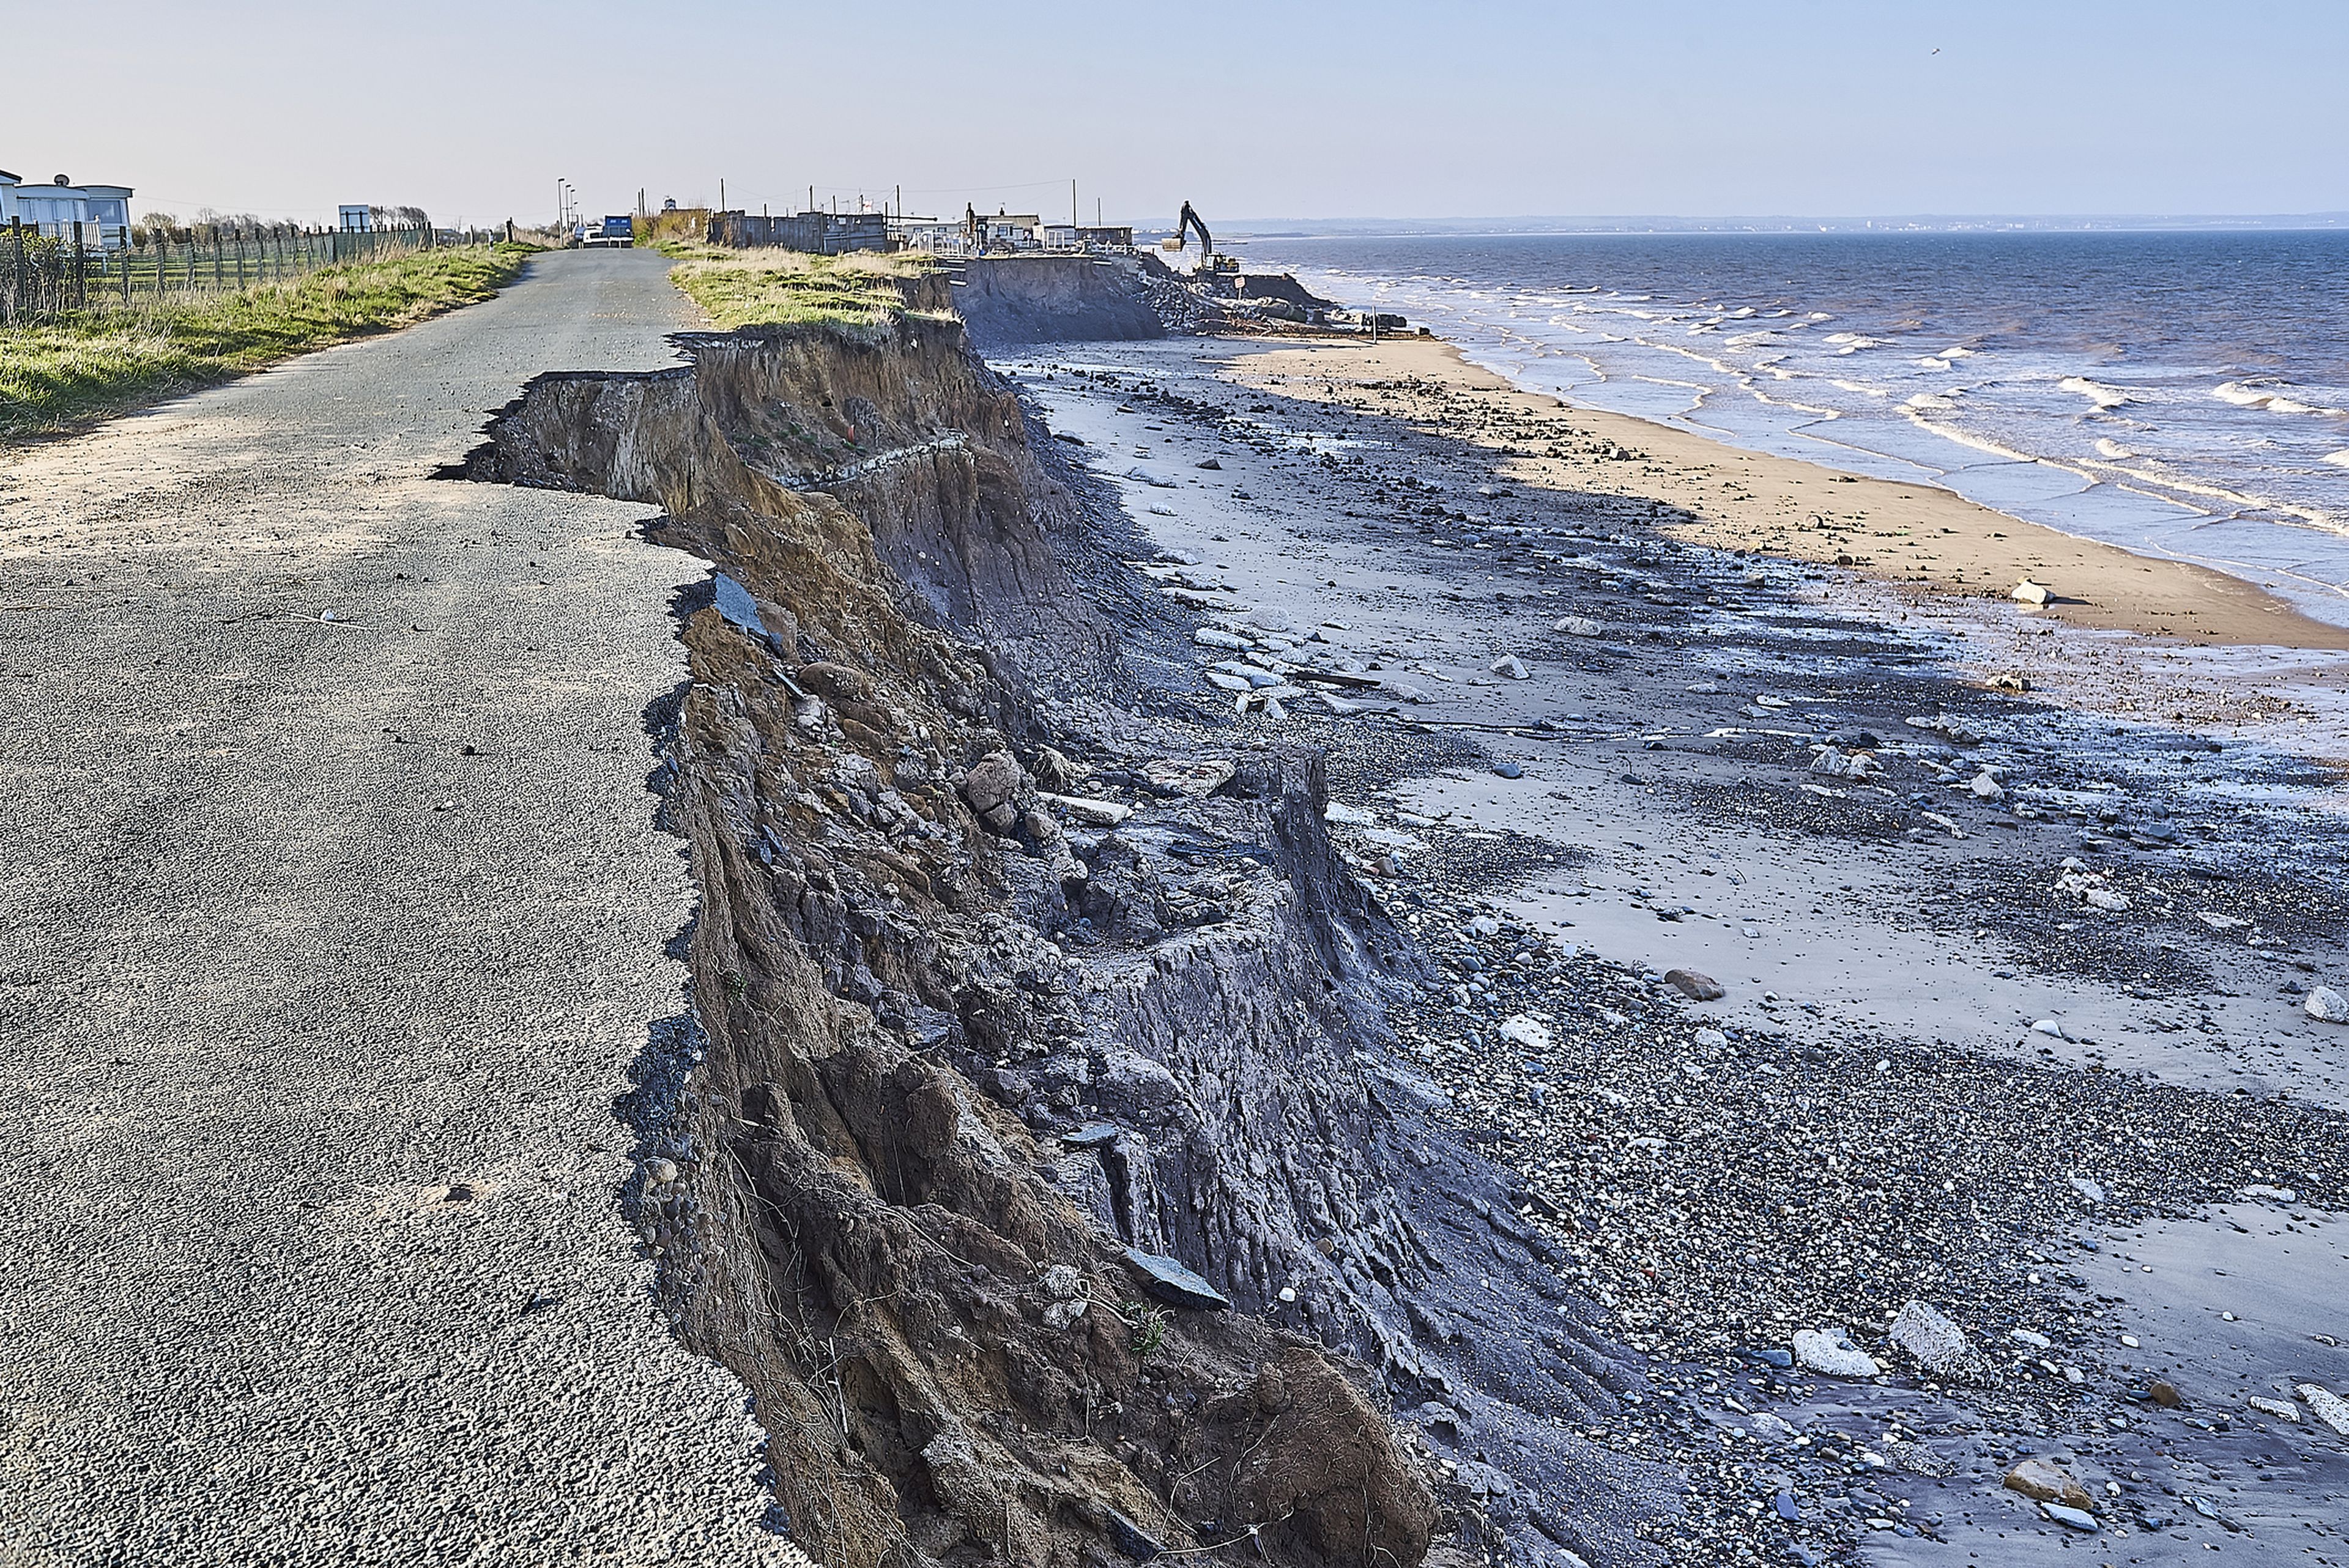 Erosión costera en Skipsea, en la costa este de Yorkshire, por el cambio climático.